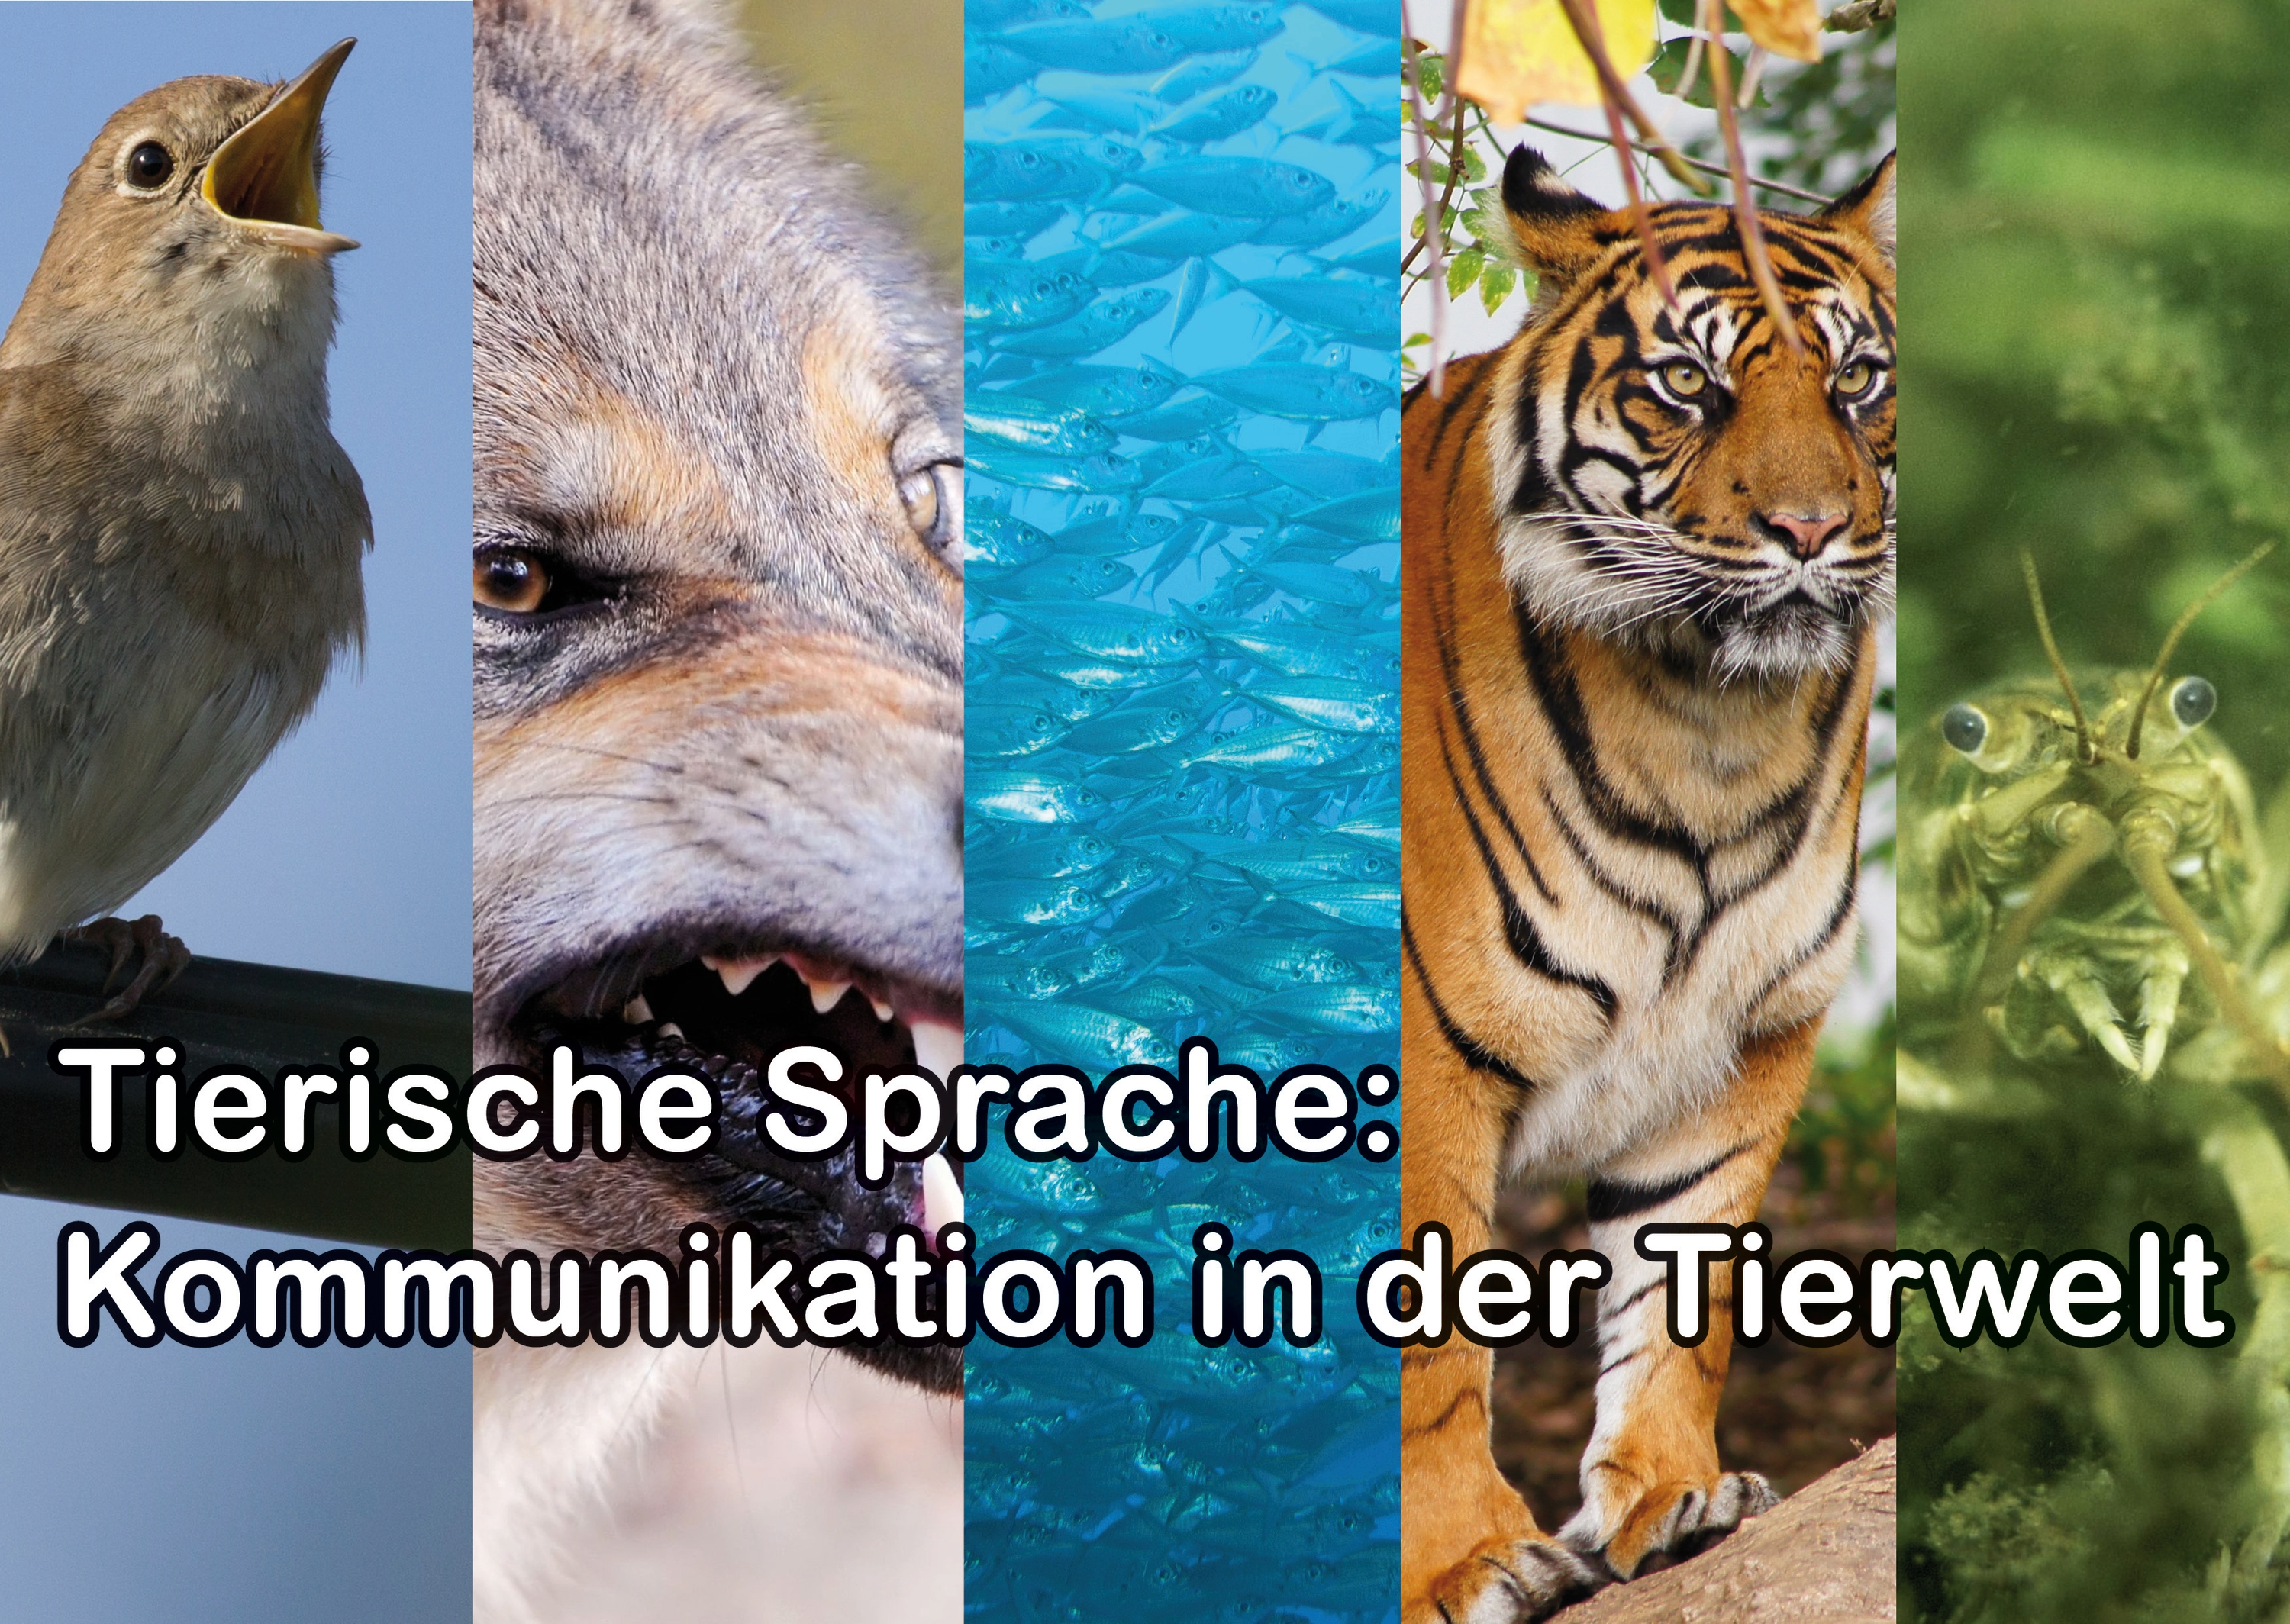 Tierische Sprache - Kommunikation in der Tierwelt - Tierwissen - Aktuelles Tierpark Berlin und Zoo Berlin - Freunde Hauptstadtzoos